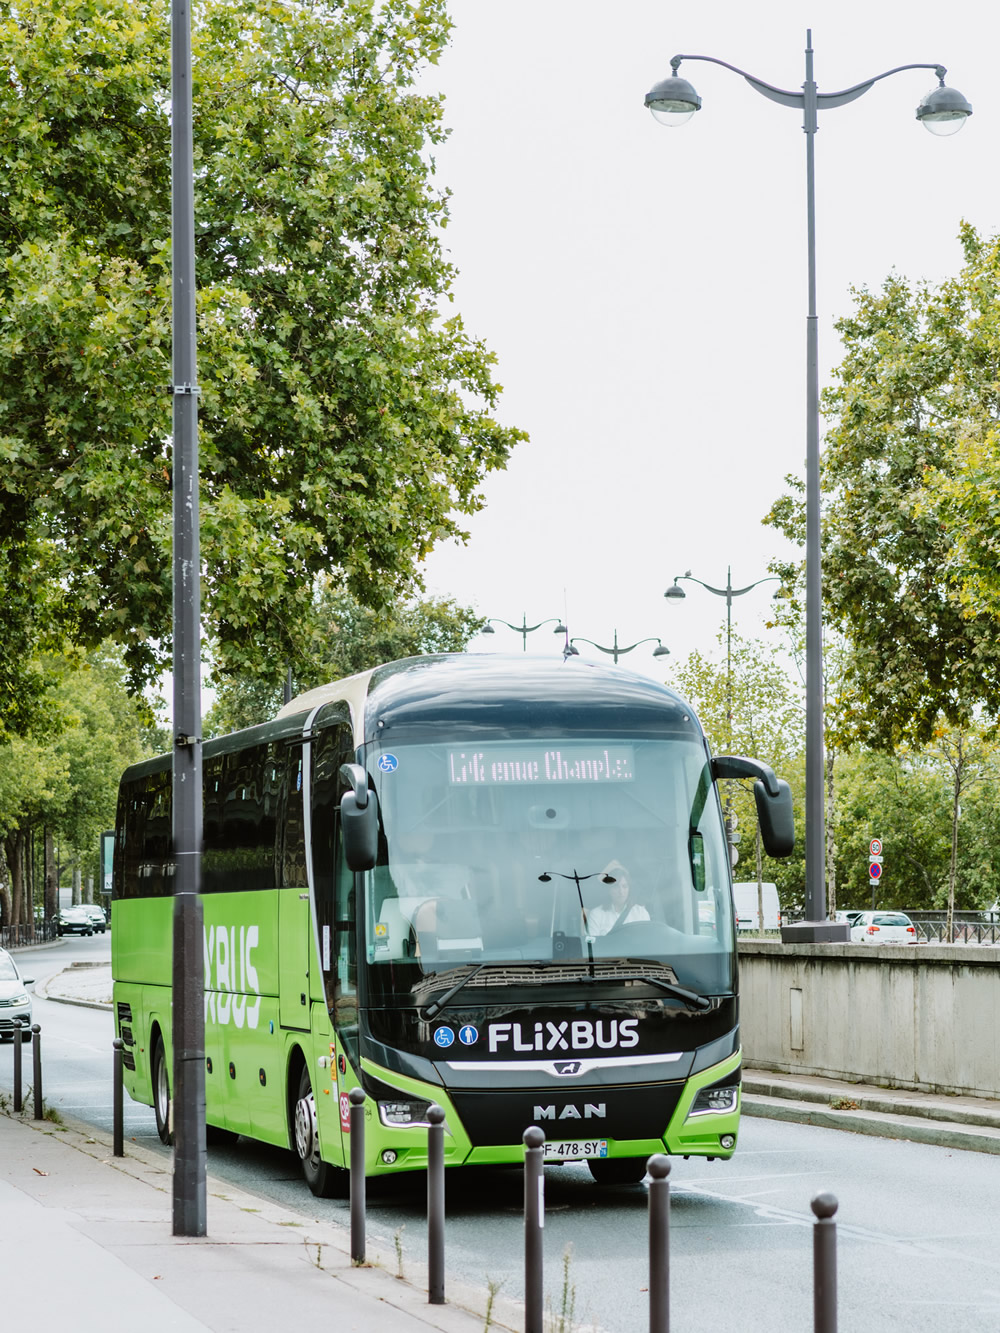 FlixBus Paris: cheap by bus from London, Brussels, Lille, Lyon, etc...